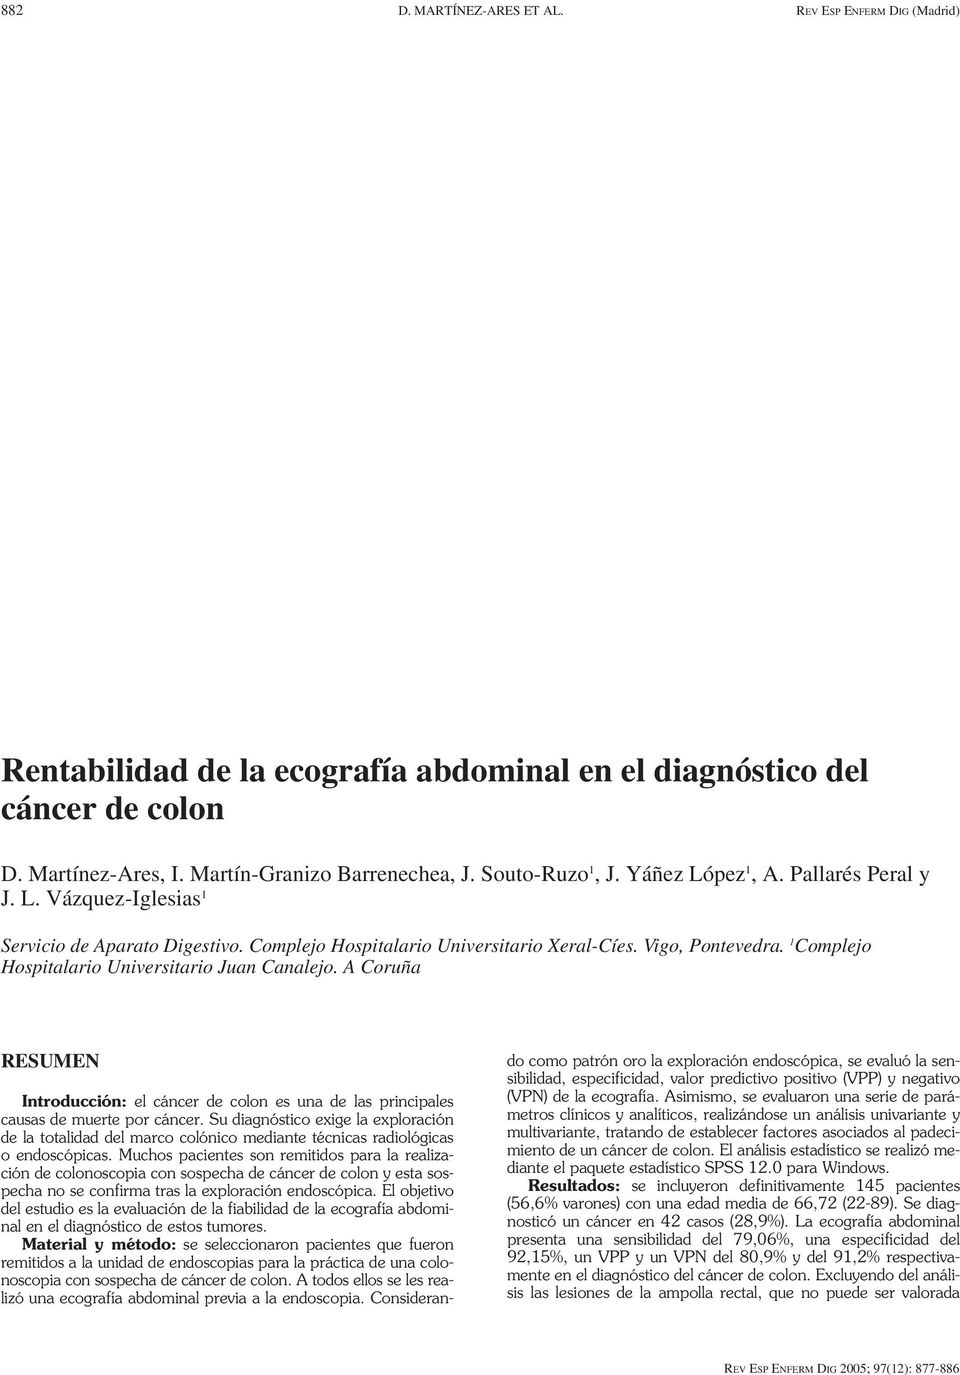 1 Complejo Hospitalario Universitario Juan Canalejo. A Coruña RESUMEN Introducción: el cáncer de colon es una de las principales causas de muerte por cáncer.